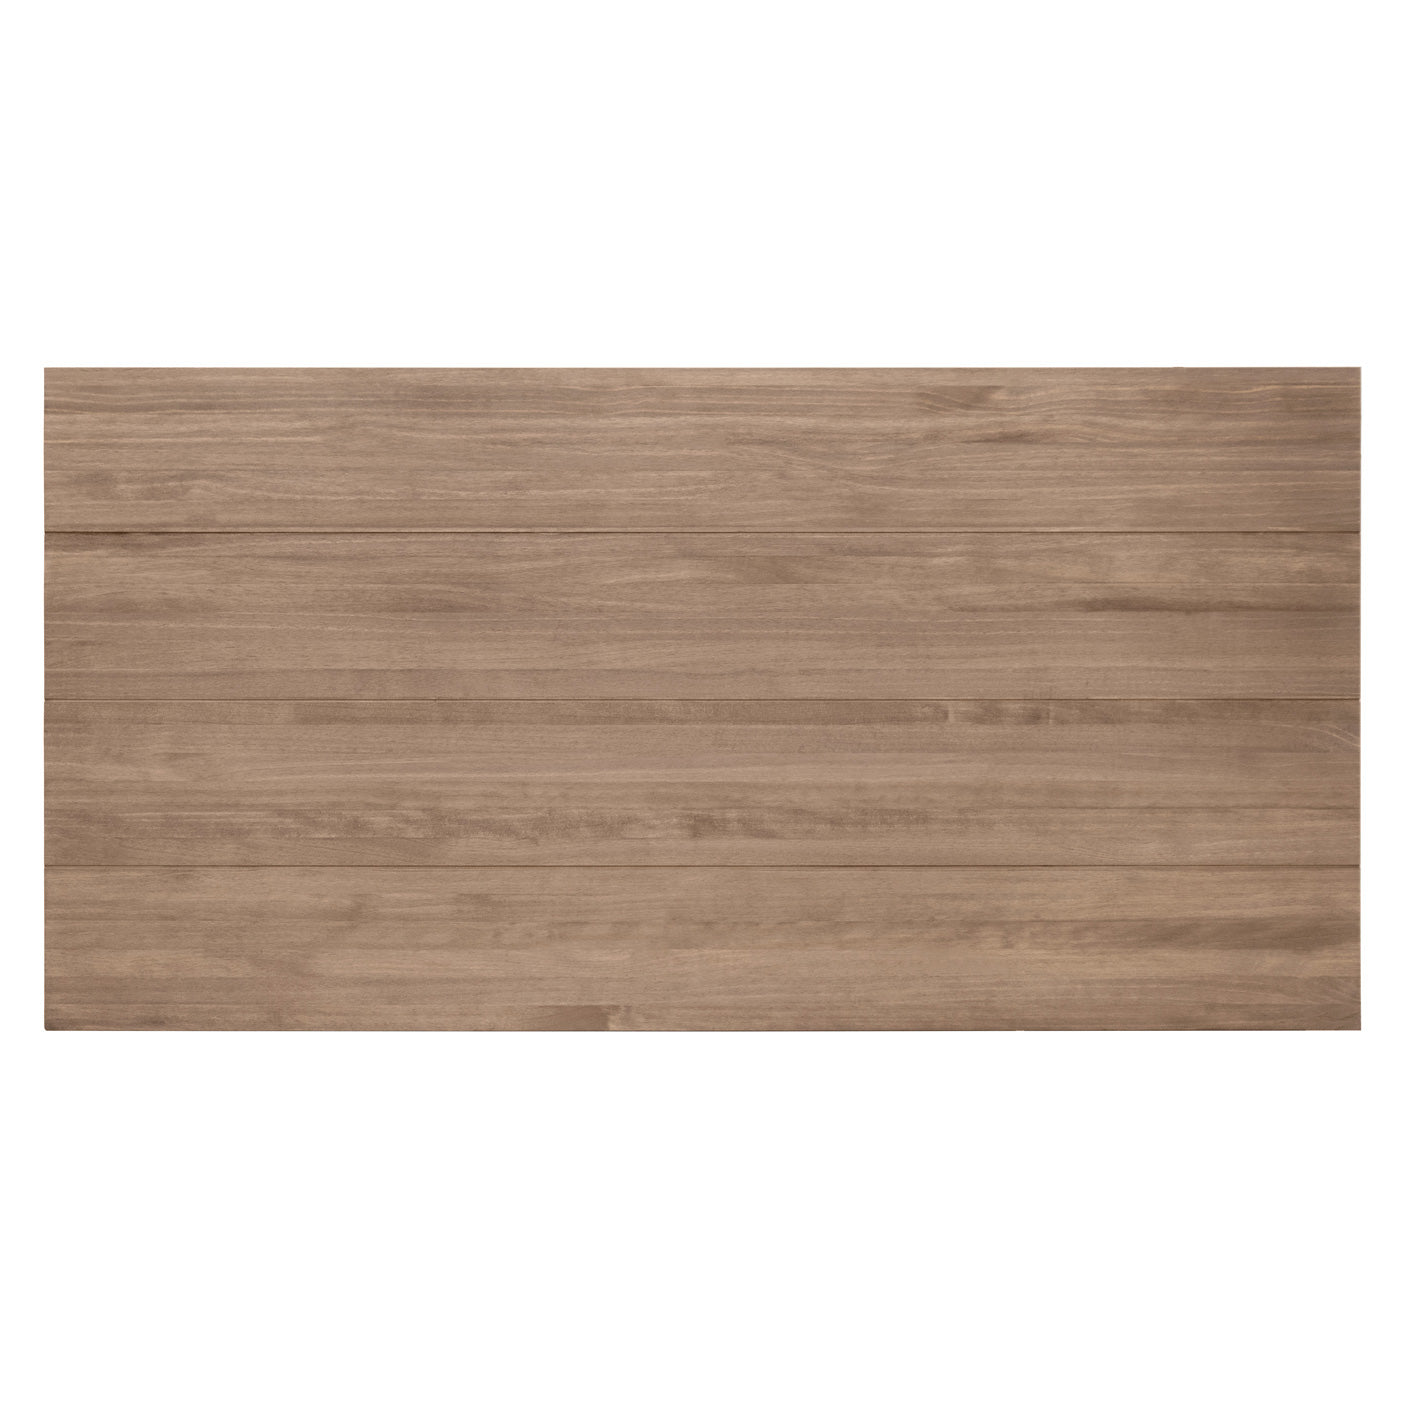 Cabecero de madera maciza en tono roble oscuro de 150x80cm - DECOWOOD